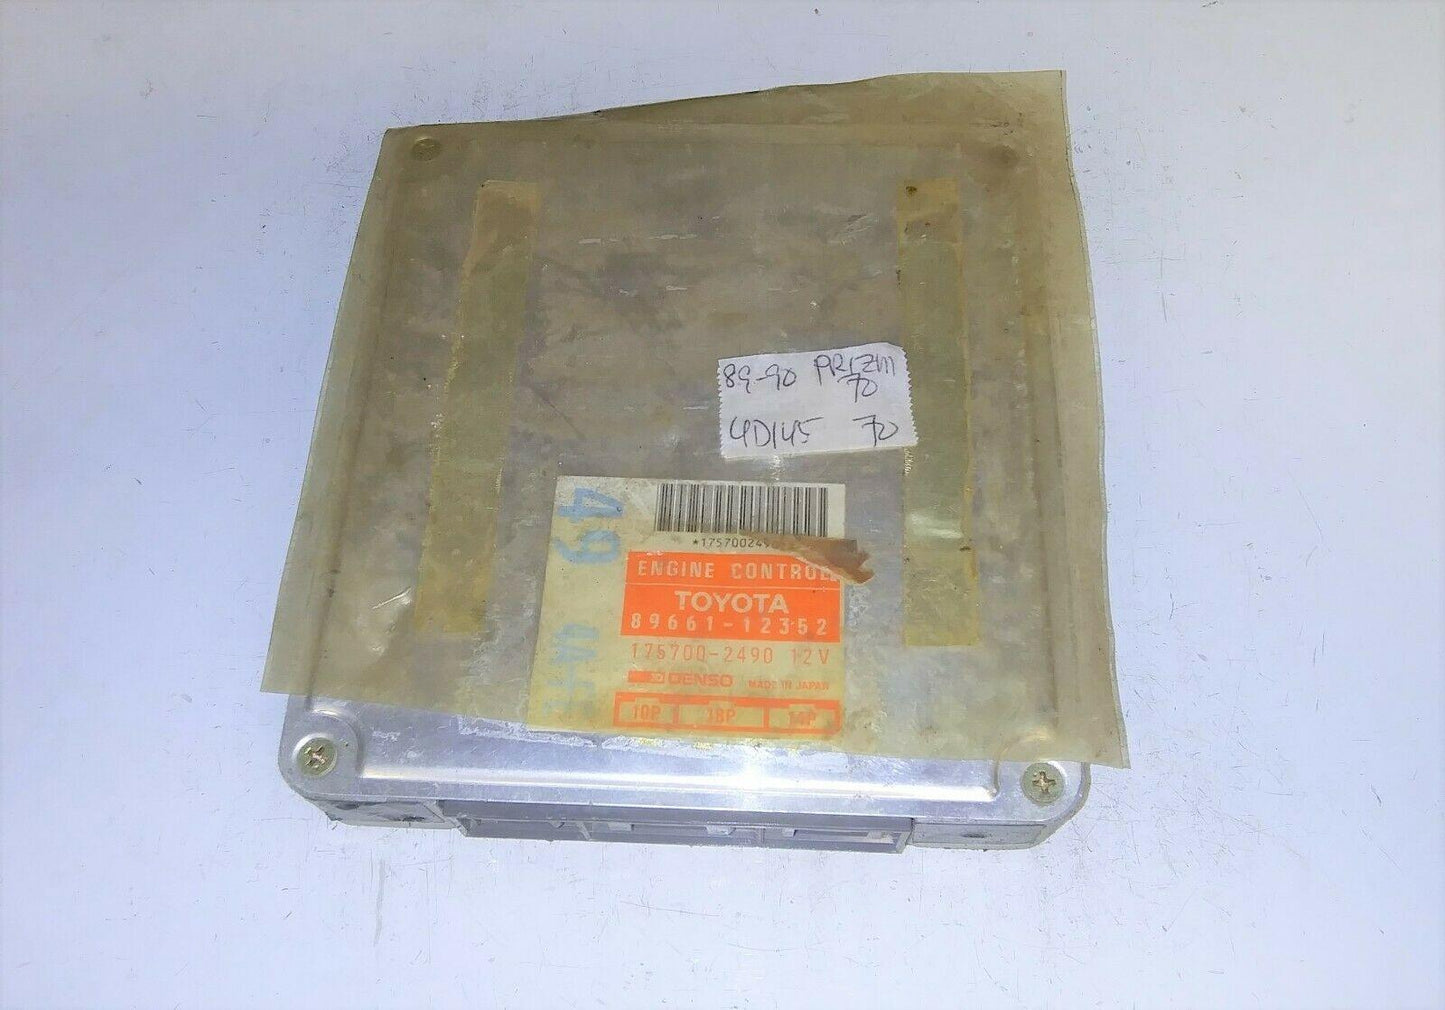 1989-1990 Geo Prizm ecm ecu computer 89661-12352.